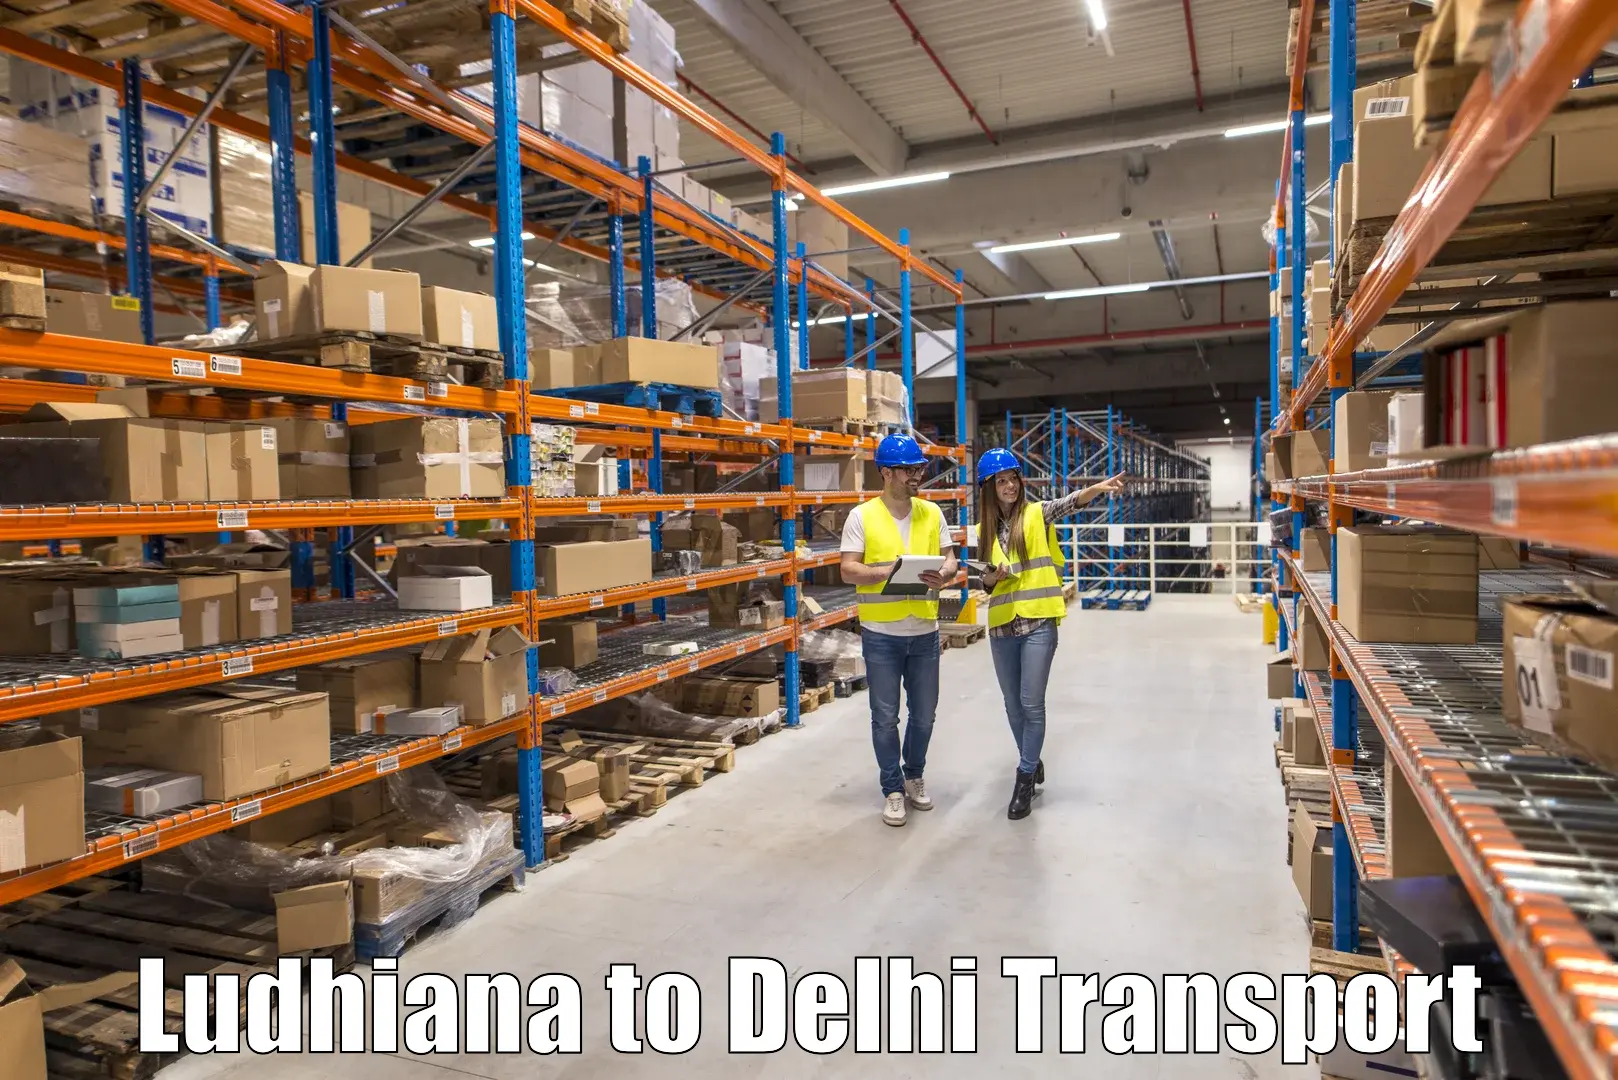 Road transport services in Ludhiana to Delhi